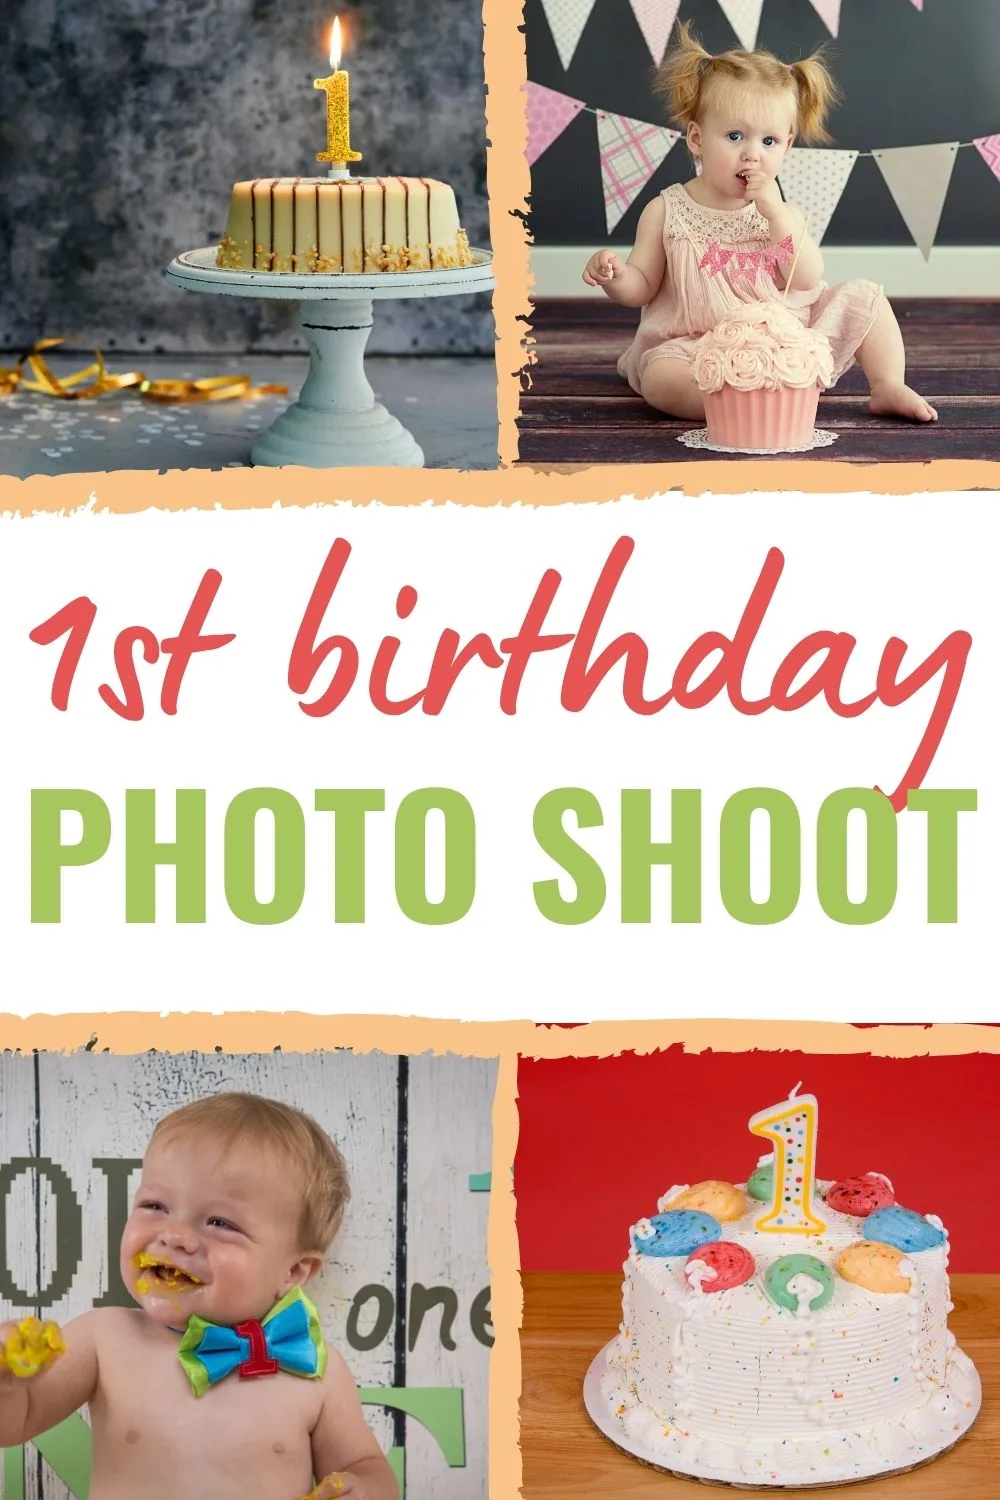 1st birthday photo shoot ideas